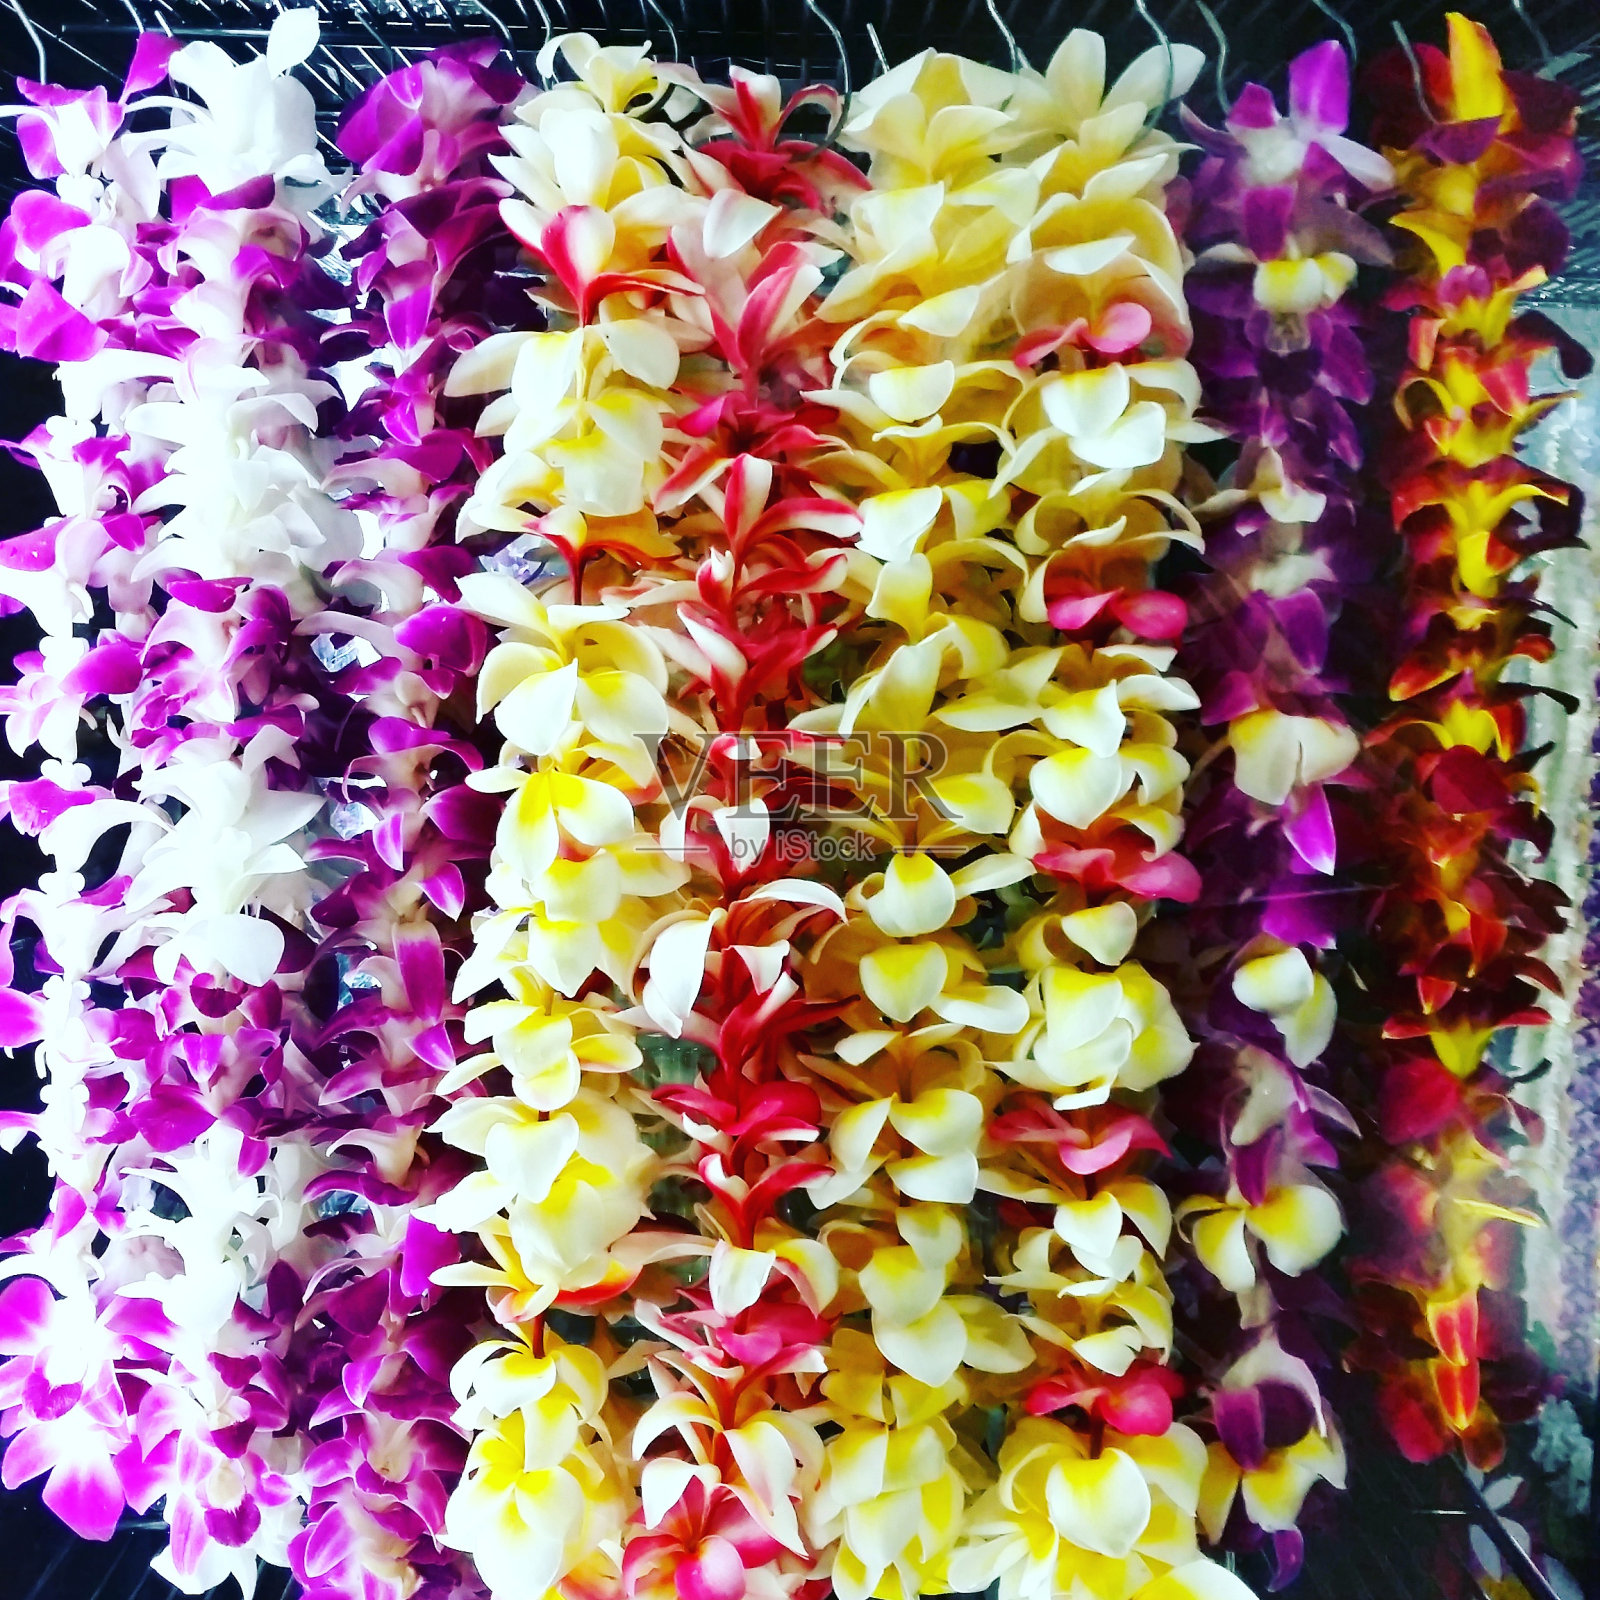 檀香山瓦胡岛出售的彩色夏威夷花环项链照片摄影图片